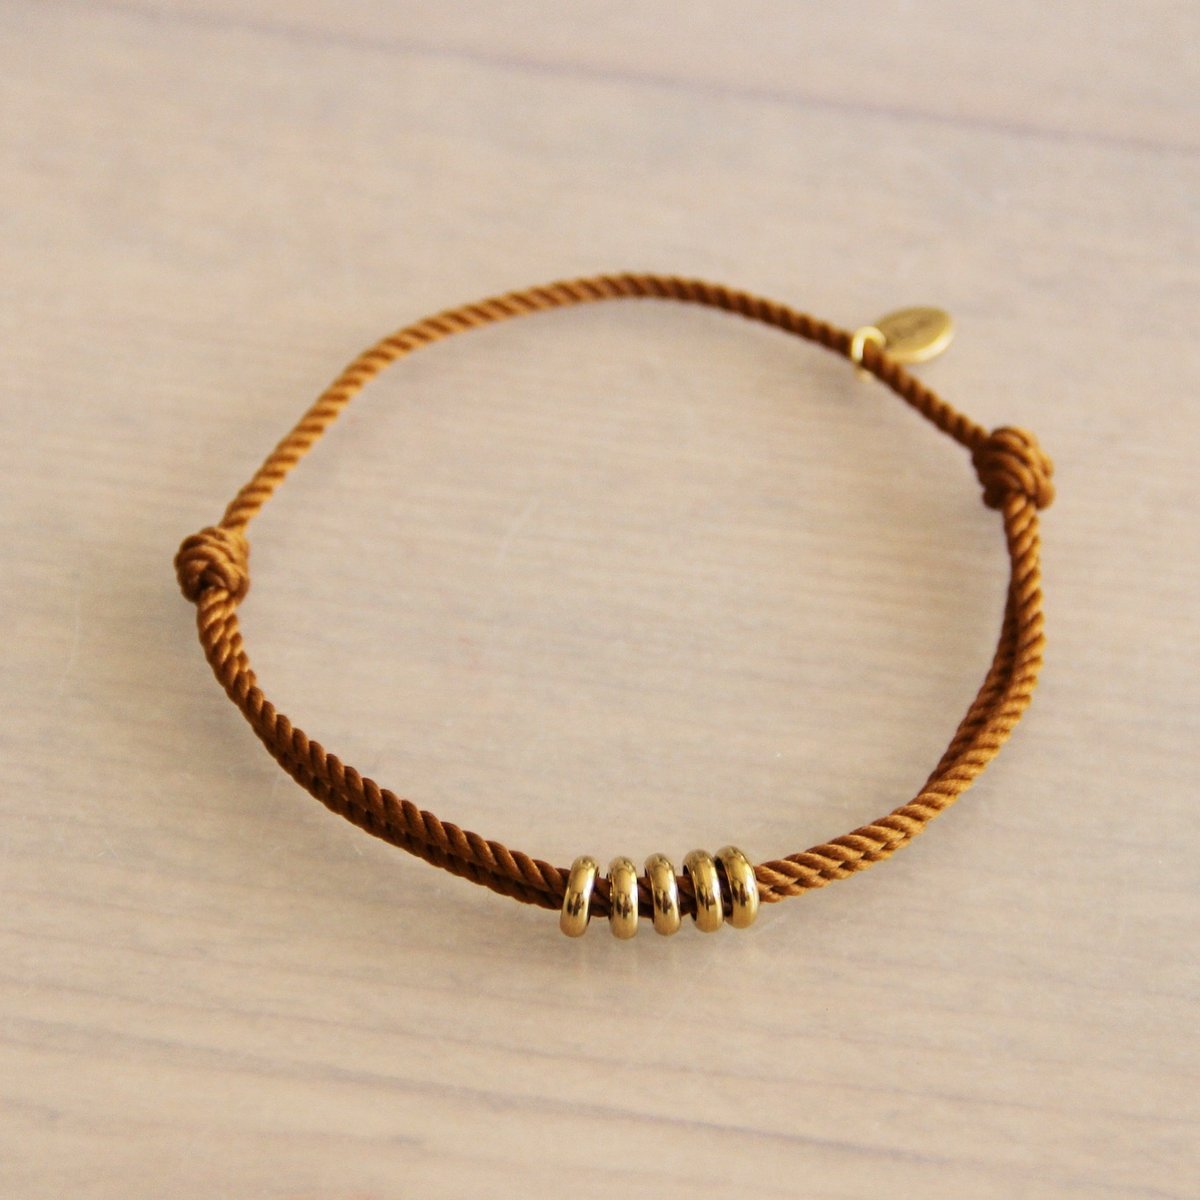 Gedraaid koord armband met ringen- roestbruin/goud